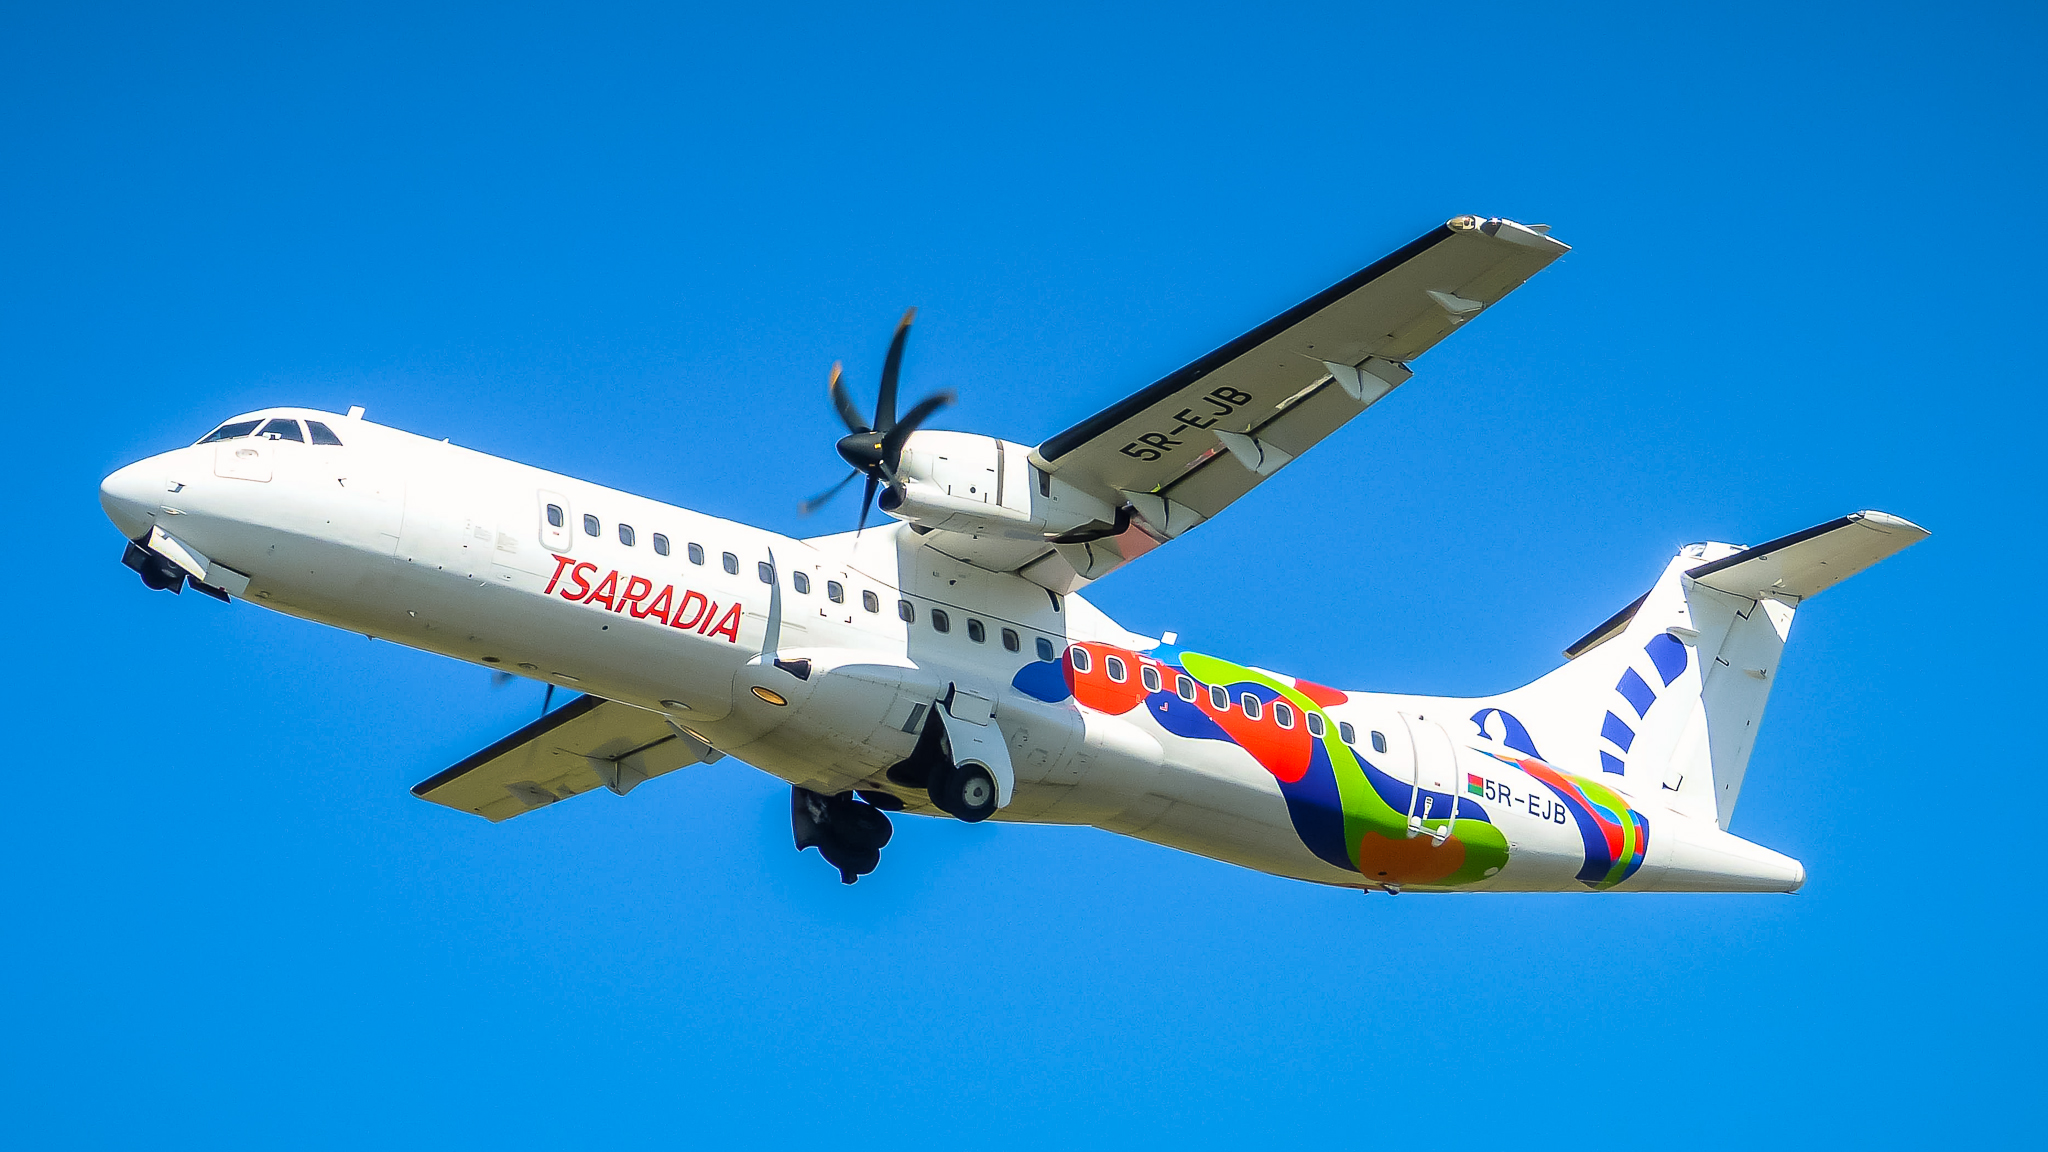 Air Madagascar compte beaucoup sur Tsaradia, sa nouvelle filiale domestique lancée en juillet 2018, pour développer le tourisme partout sur l'île et repartir de l'avant... © DR Air Madagascar